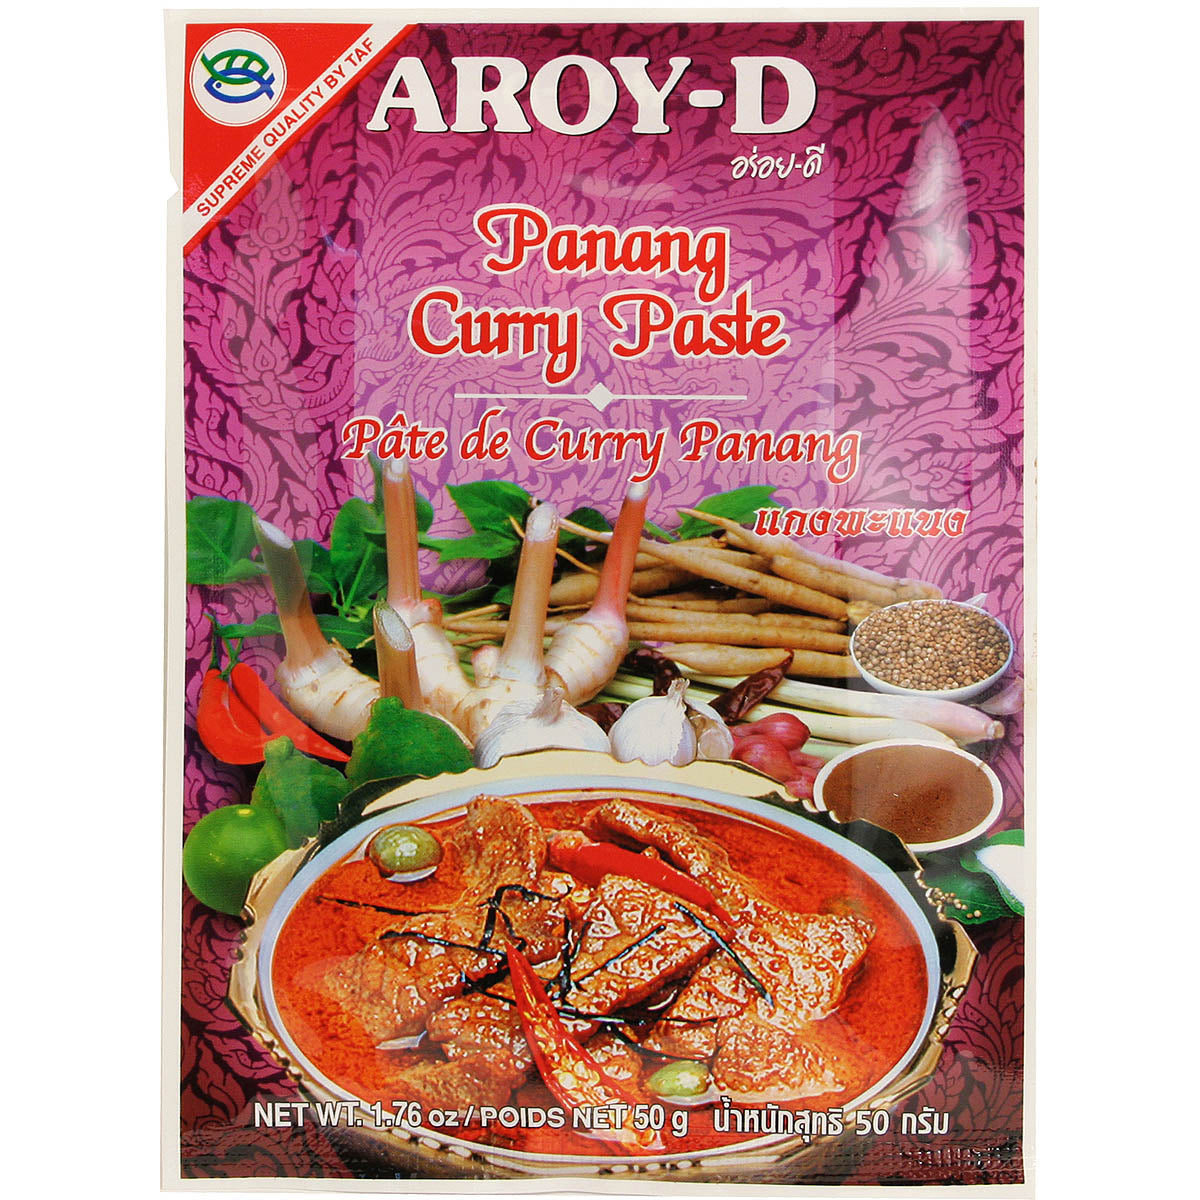 Pâte de Curry Panang